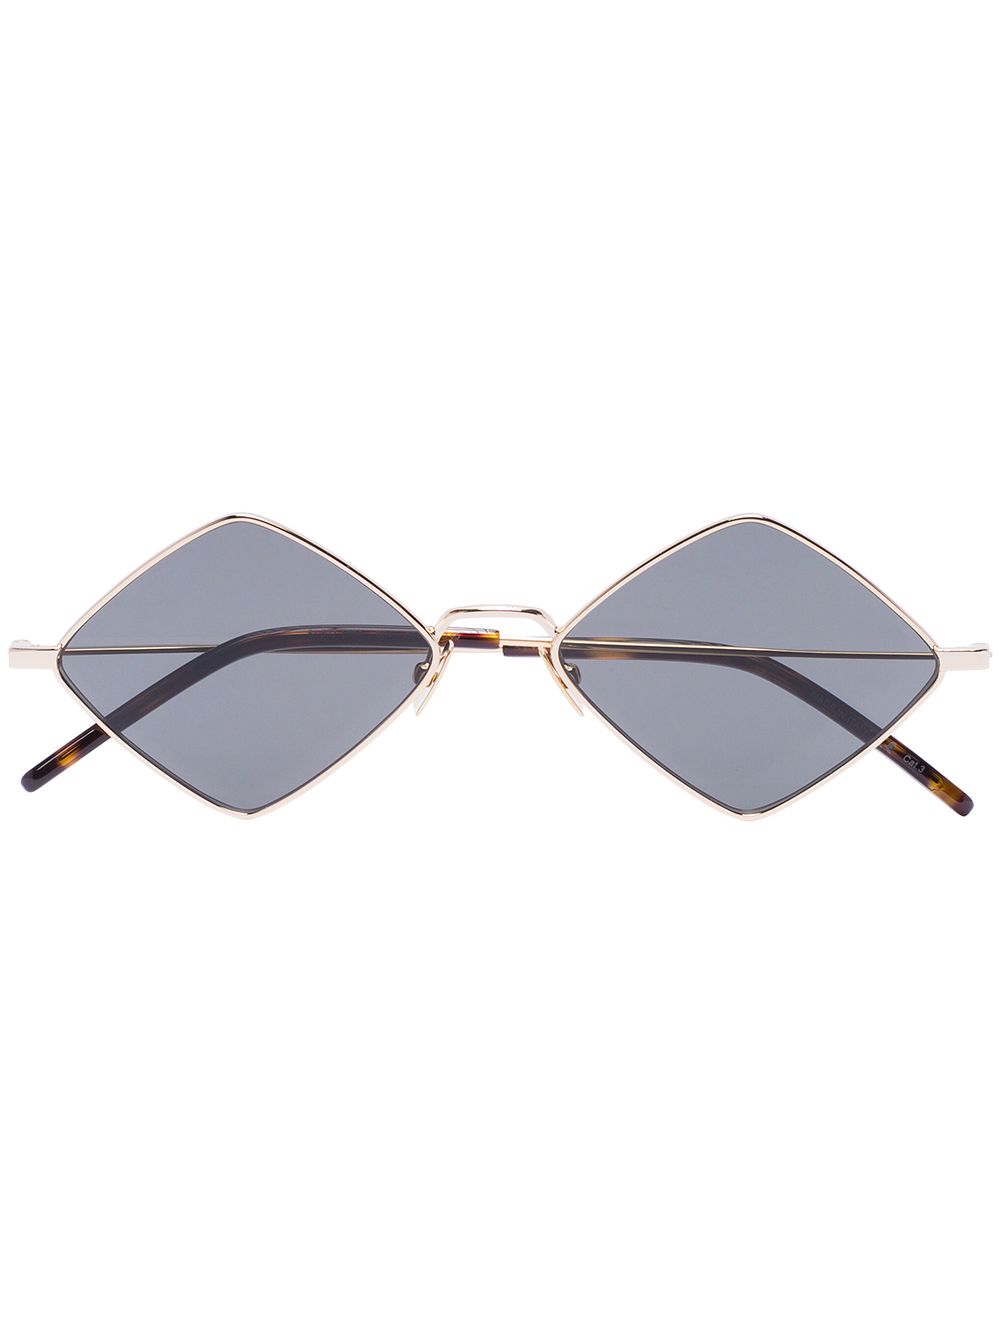 фото Saint laurent eyewear солнцезащитные очки в оправе в форме ромбов